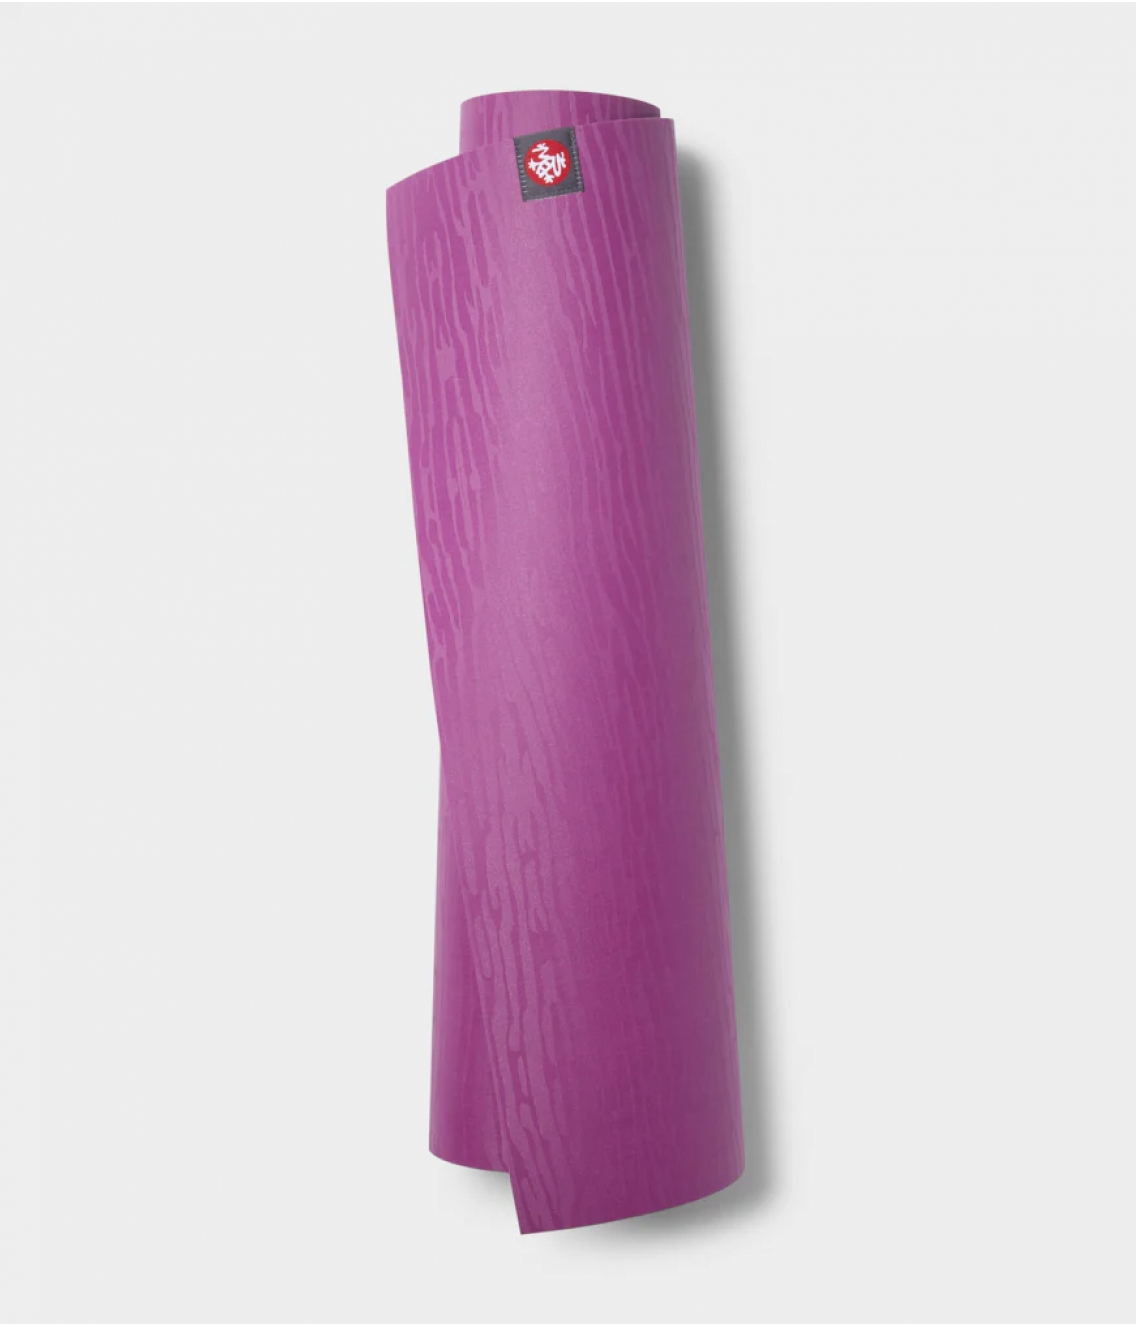 Профессиональный каучуковый коврик для йоги Manduka eKO 180*61*0,5 см - Purple Lotus